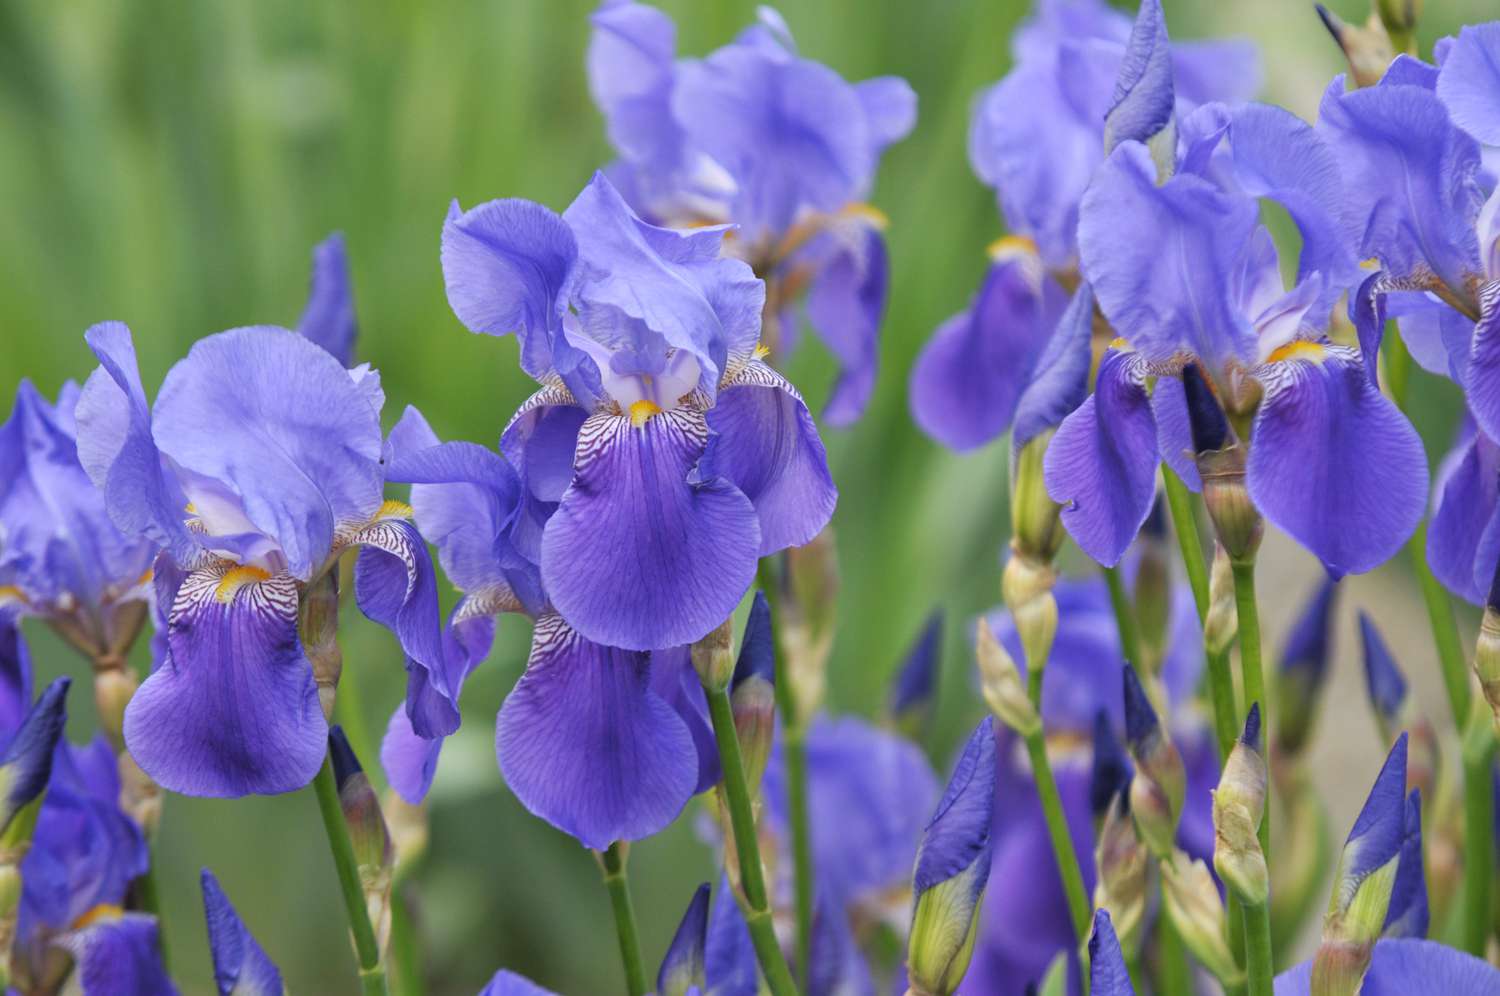 Primer plano de flores de iris moradas agrupadas en el jardín